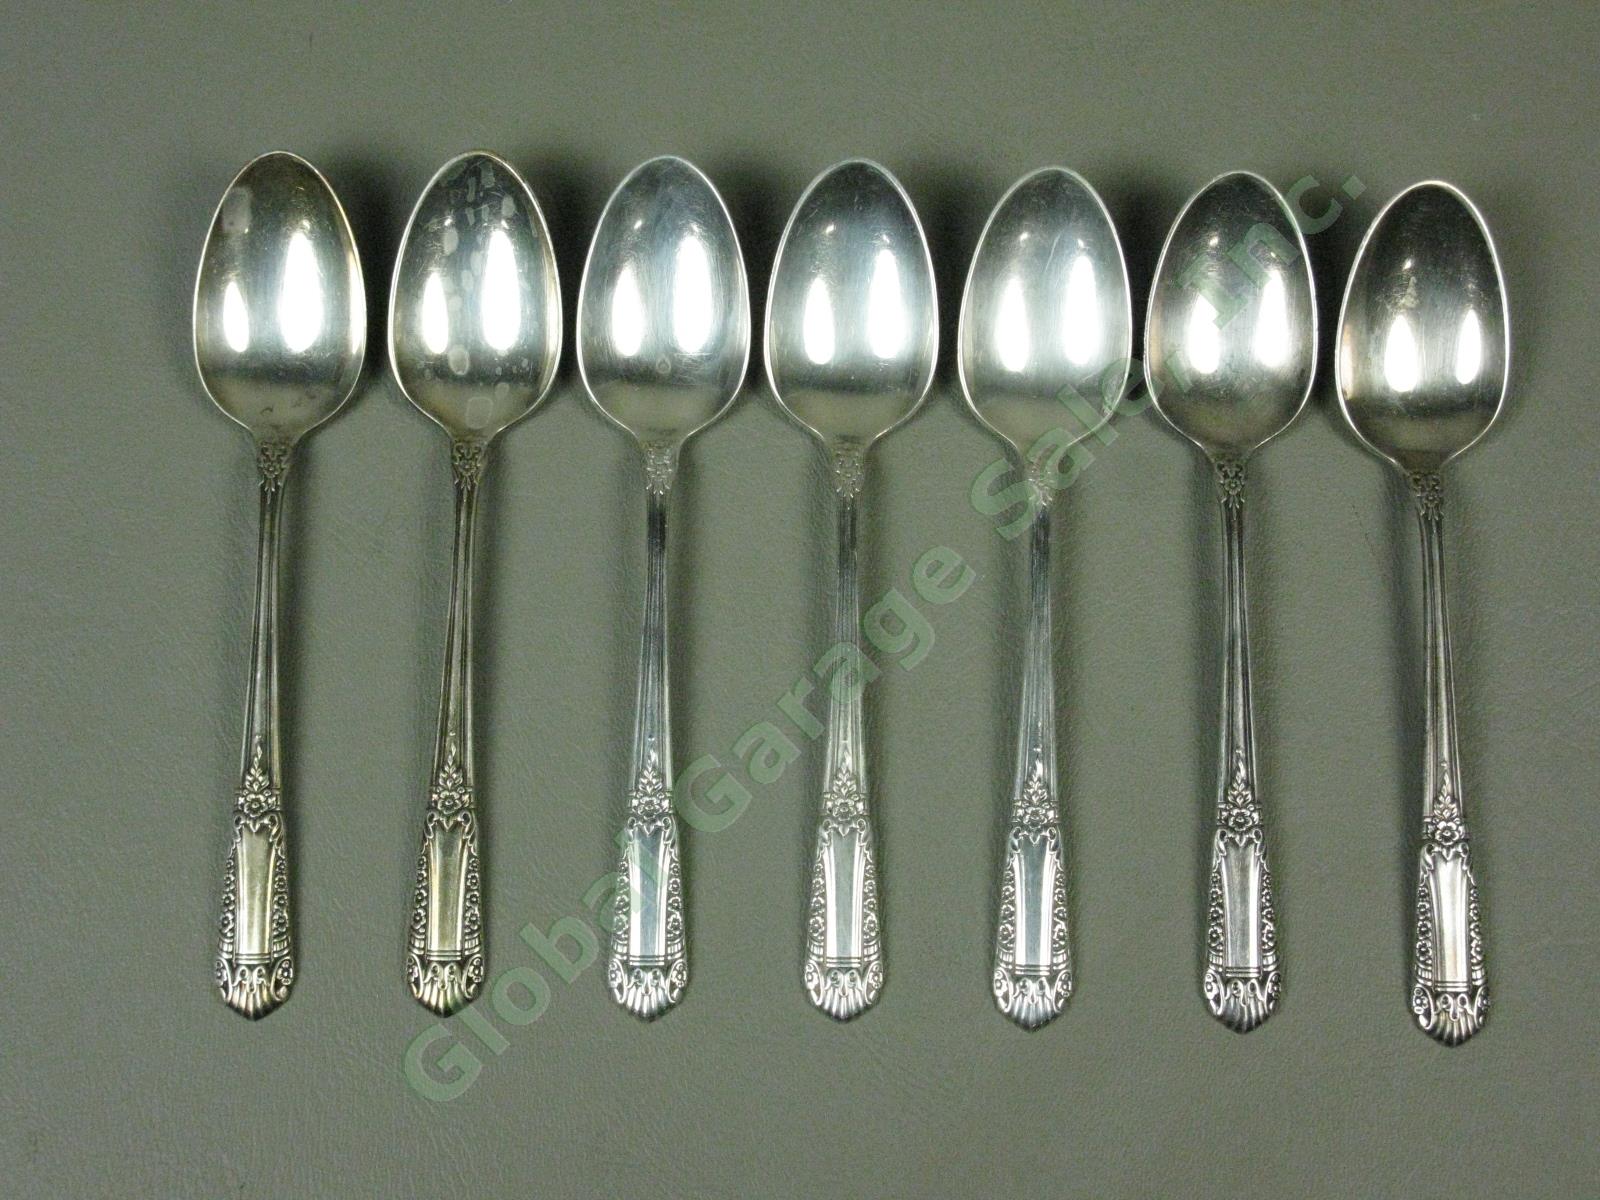 7 State House Inaugural Sterling Silver Teaspoons Spoons Silverware Flatware Set